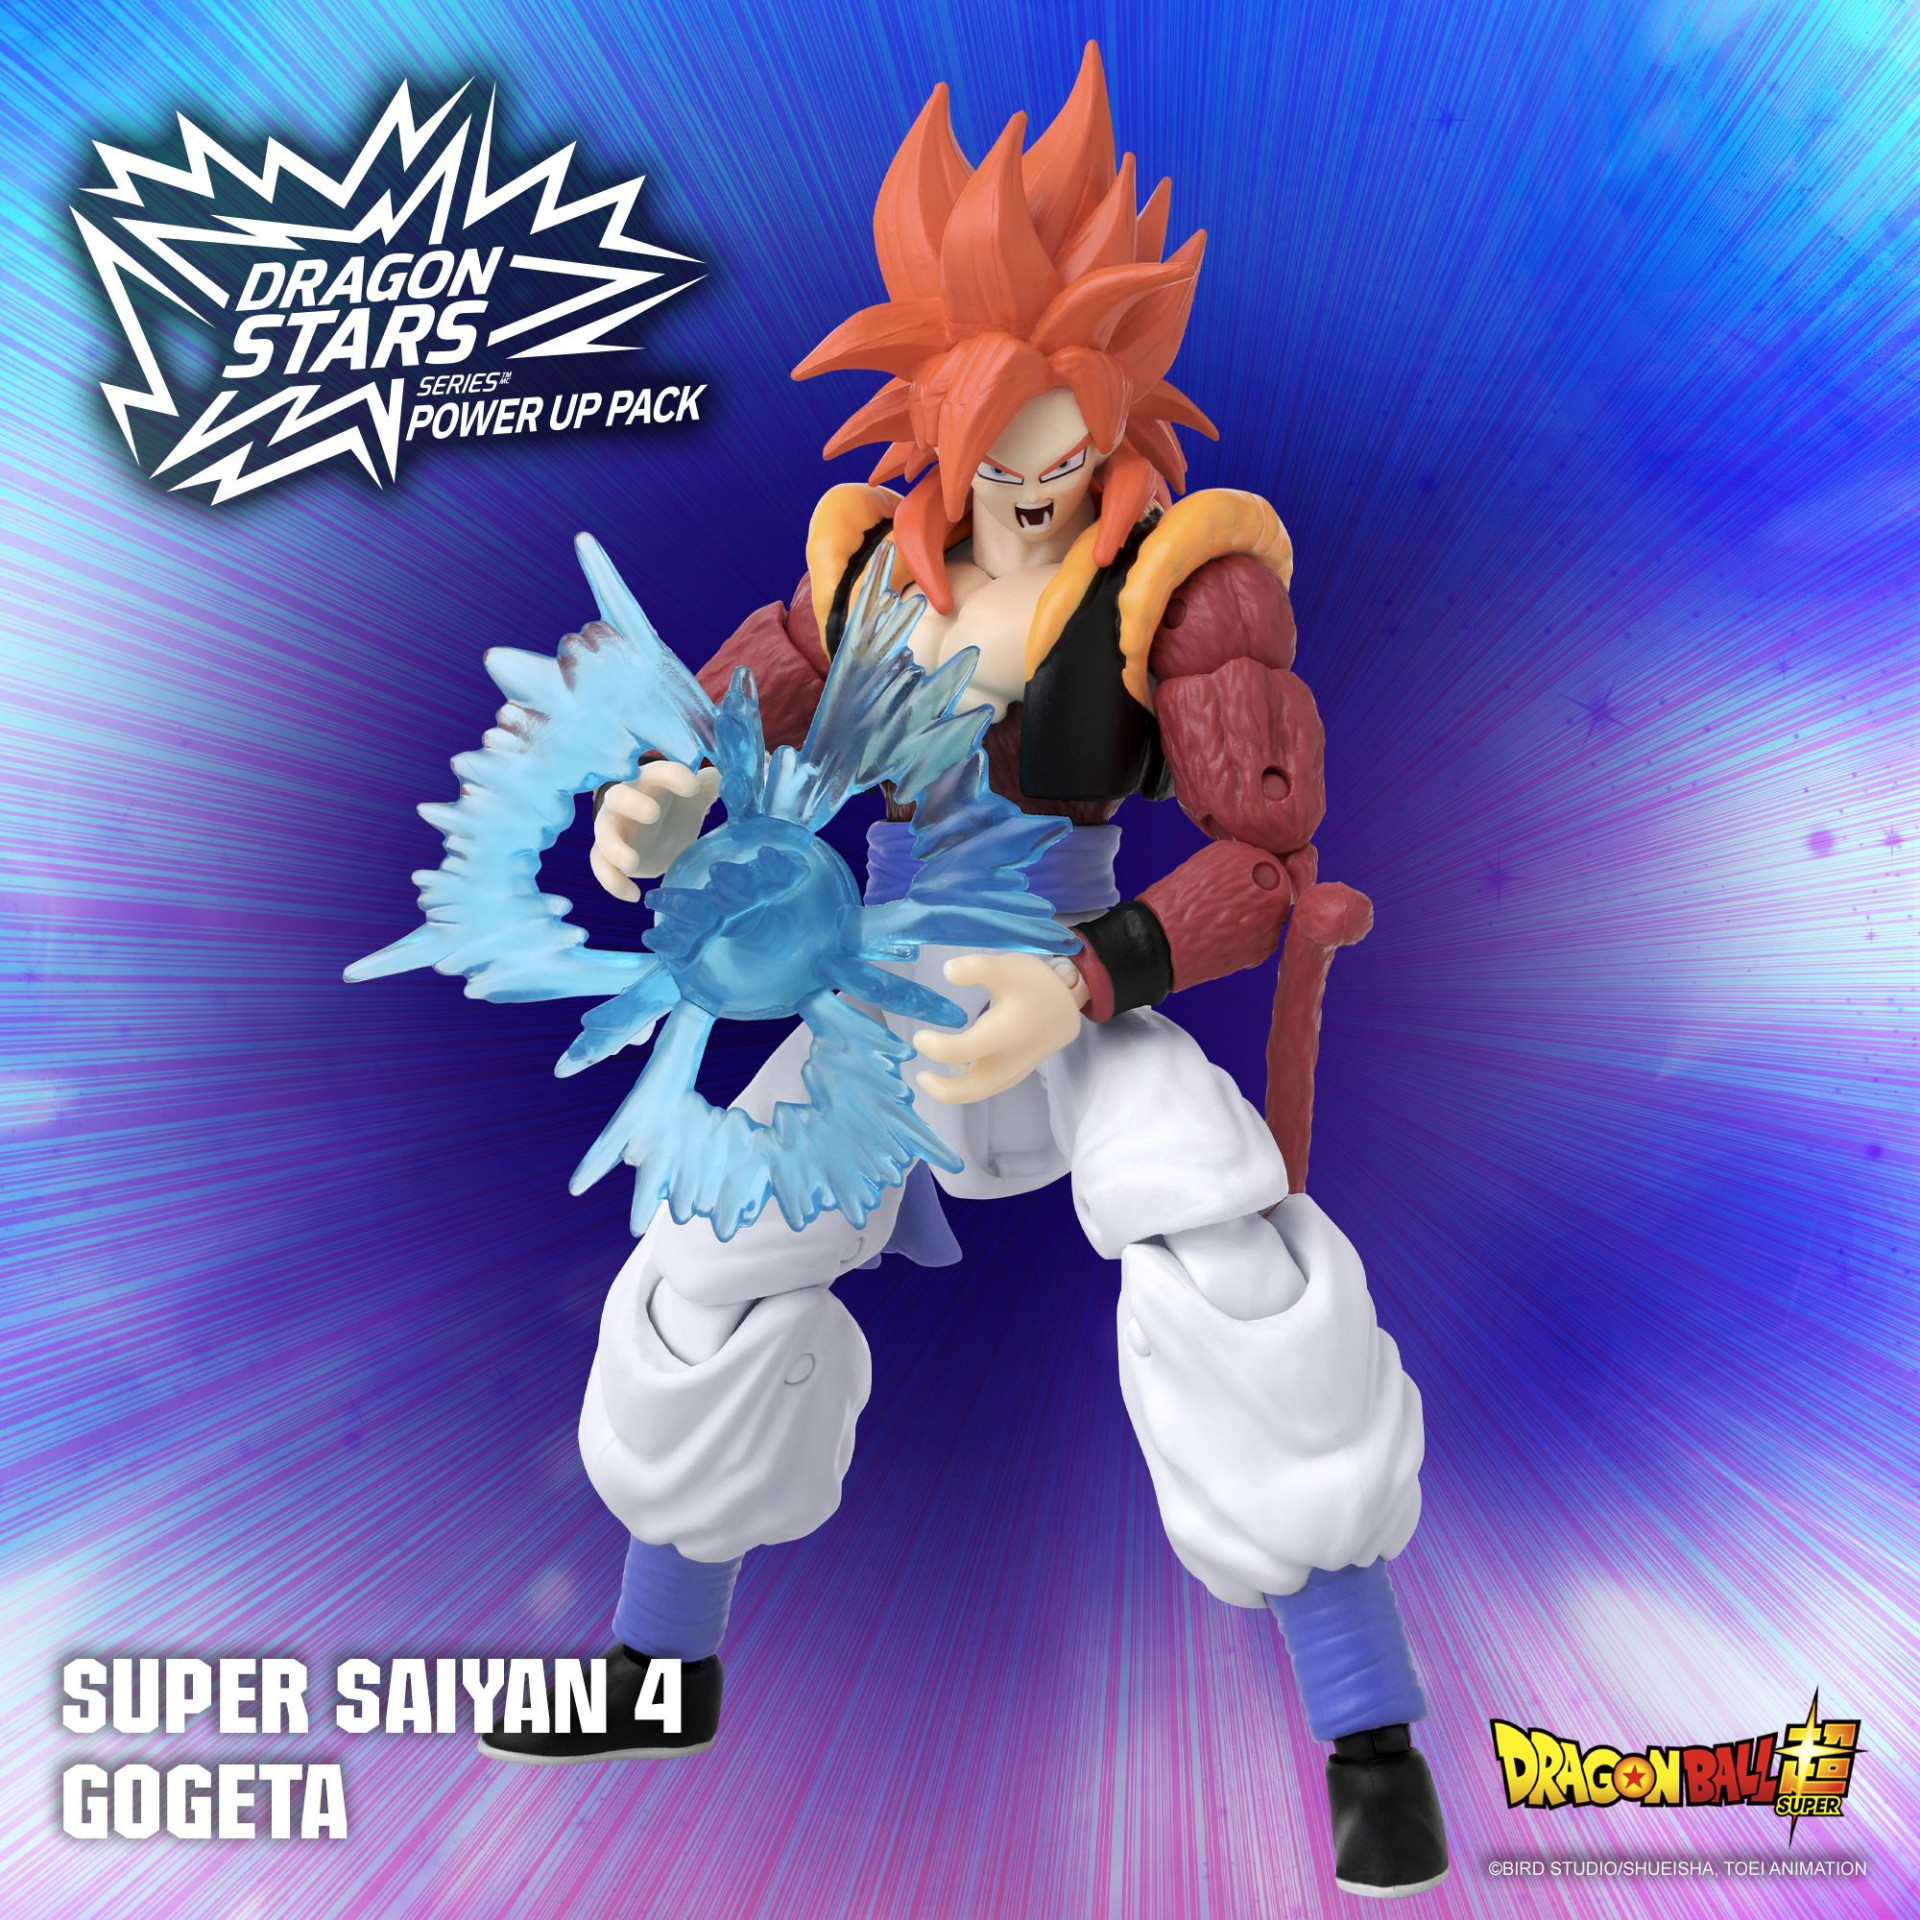 ¡ Super Saiyan 4 Gogeta ya está disponible en el Pack de potenciación de la serie Dragon Stars !